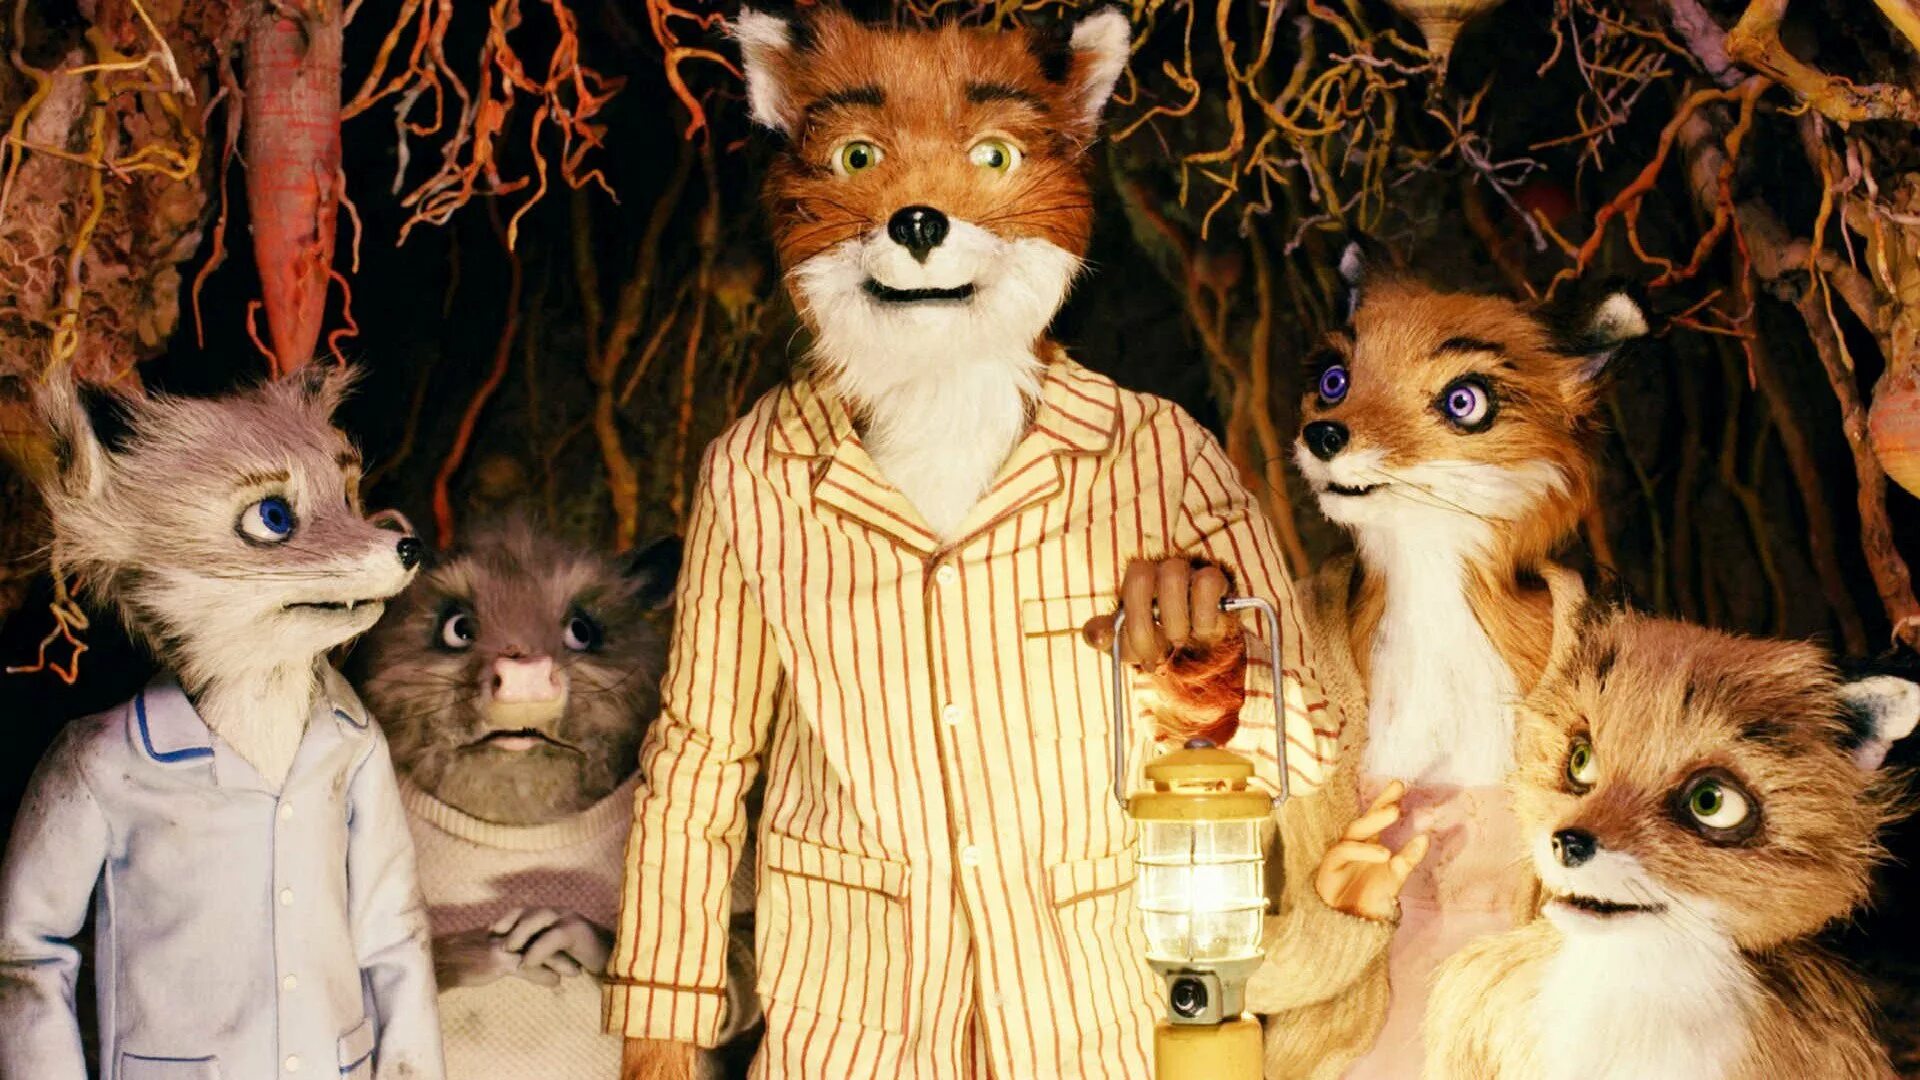 Бесподобный Мистер Фокс 2009. Бесподобный Мистер ФОК. Бесподобный Мистер Фокс 2. Бесподобный Мистер Фокс (fantastic Mr. Fox), 2009.